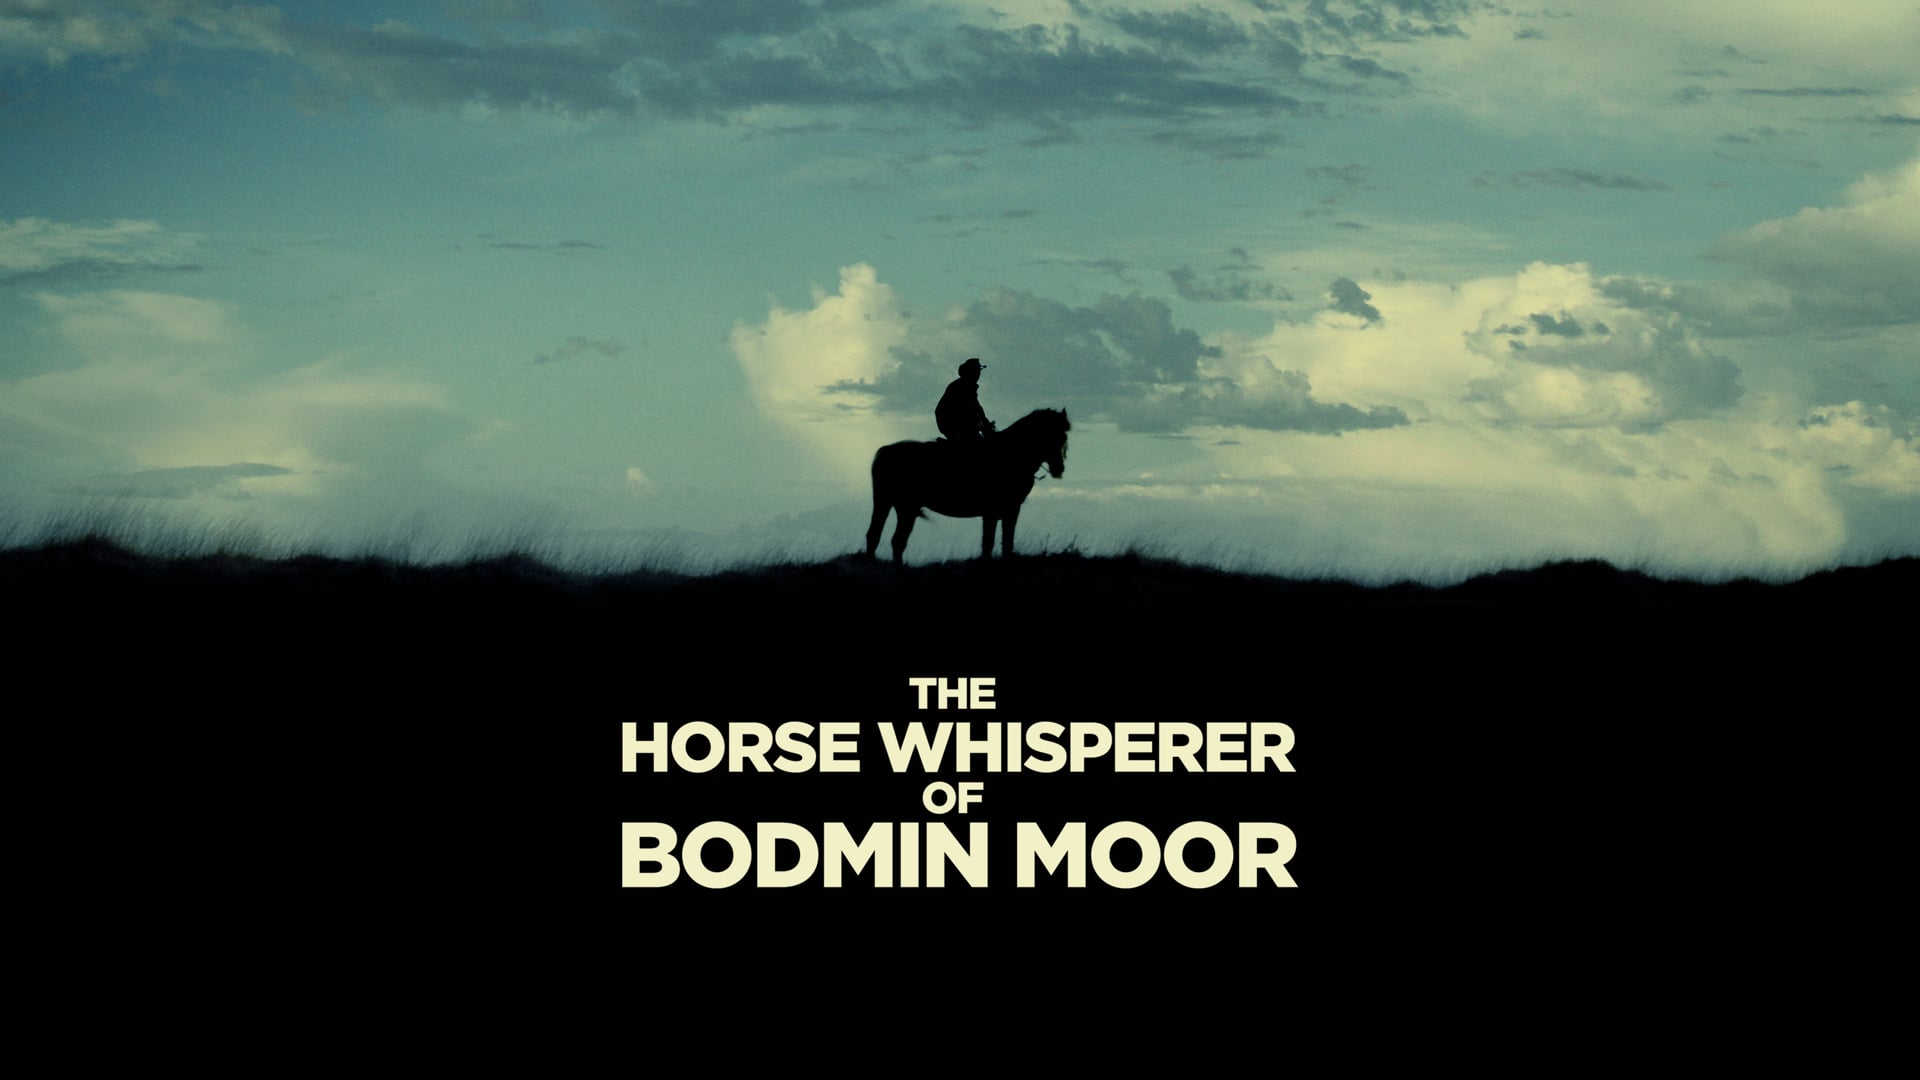 THE HORSE WHISPERER OF BODMIN MOOR - Documentary